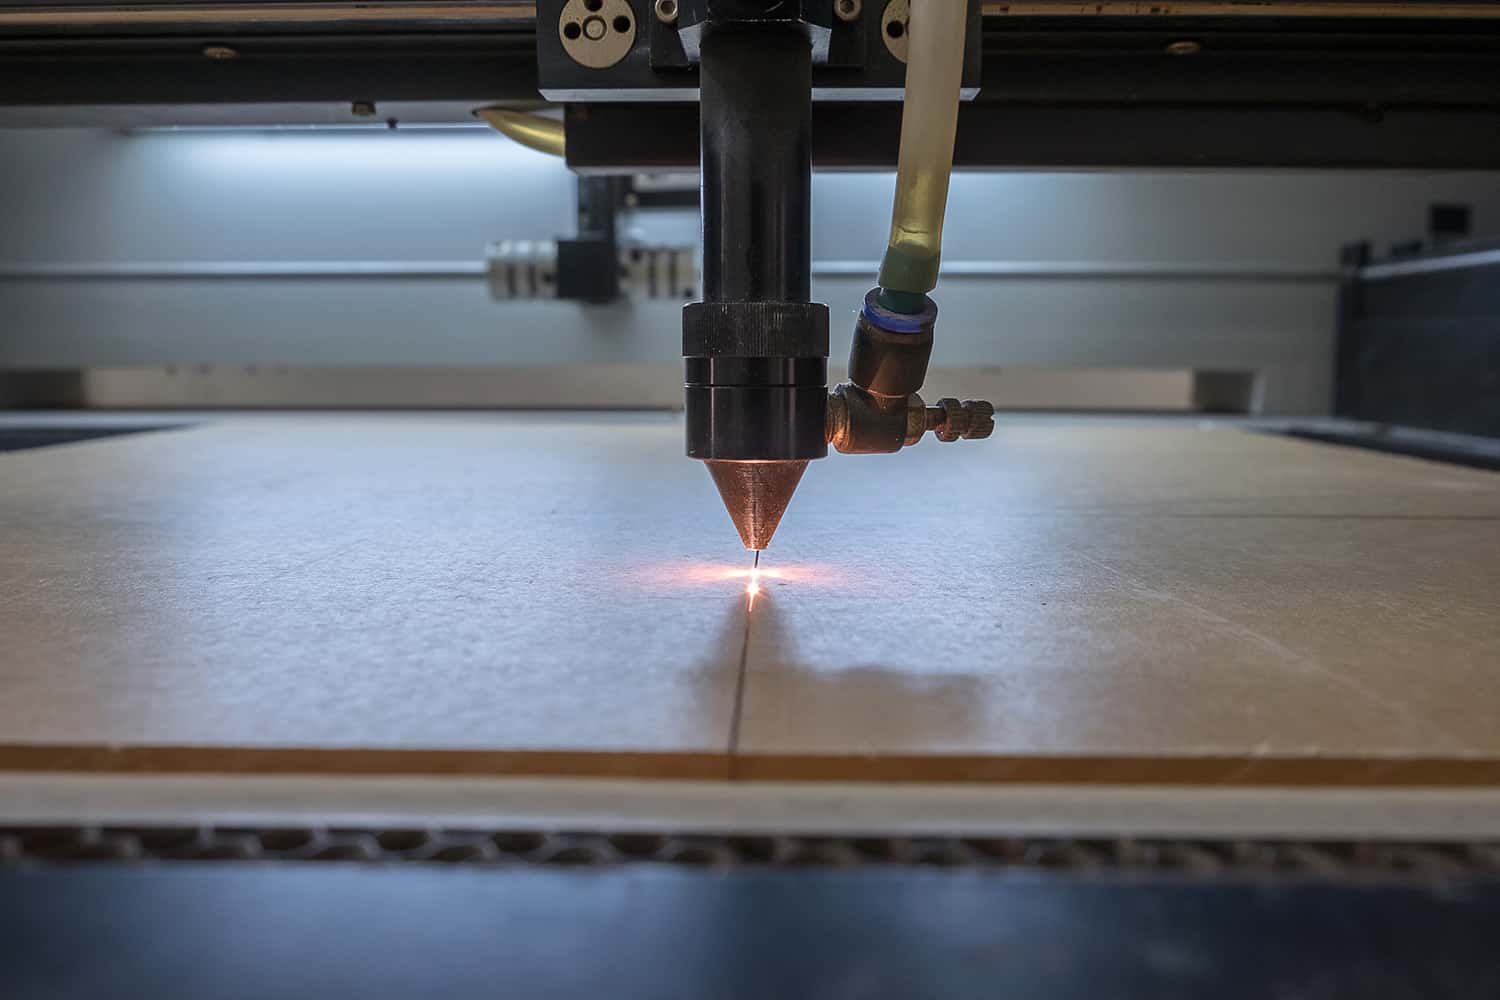 Acrylic Cutting in Laser